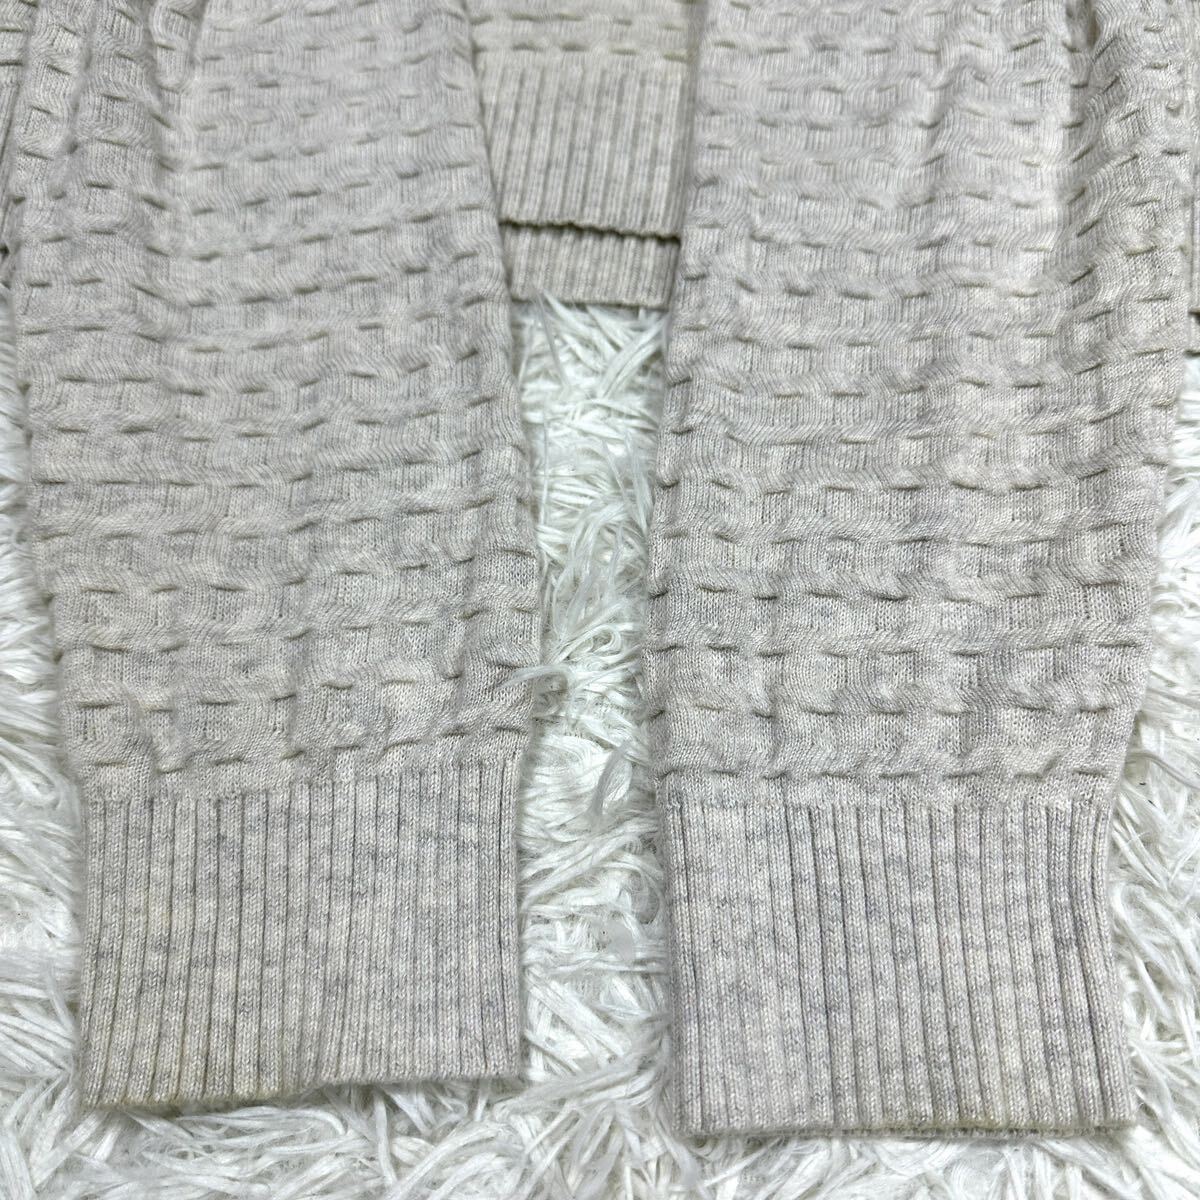 ARMANI EXCHANGE アルマーニエクスチェンジ ニット セーター 薄手 ショールカラー ブランドロゴ Lサイズ_画像4